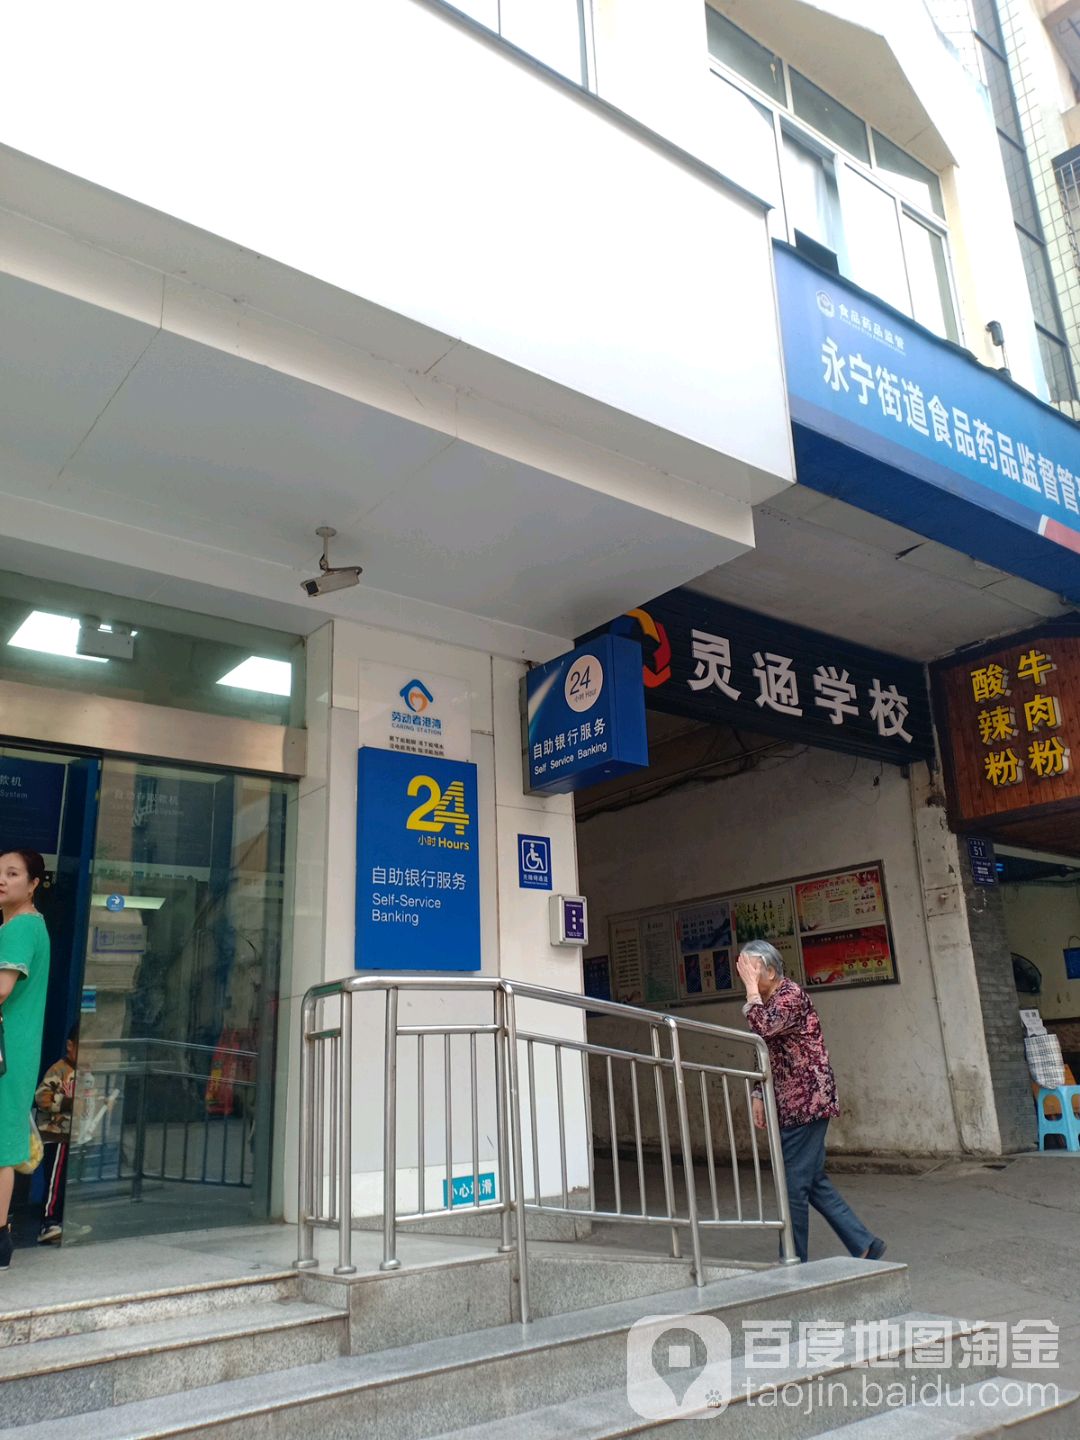 中國建設銀行24小時自助銀行(瀘州納溪支行)